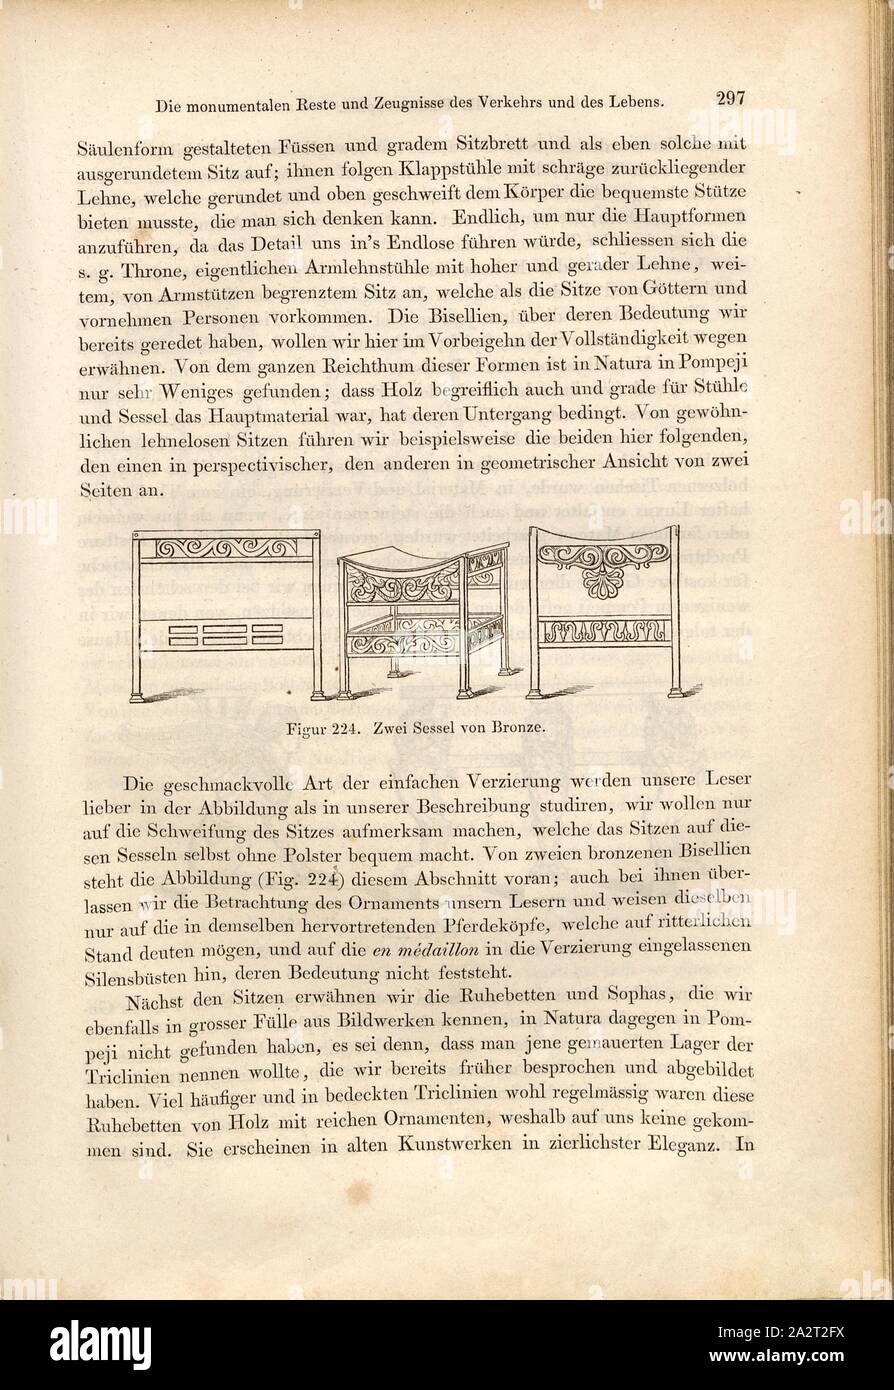 Due poltrone di bronzo, Bisellia, Fig. 224, p. 297, 1856, Johannes Overbeck: Pompei in seinen Gebäuden, Alterthümern und Kunstwerken [...]. Lipsia: Verlag von Wilhelm Engelmann, 1856 Foto Stock